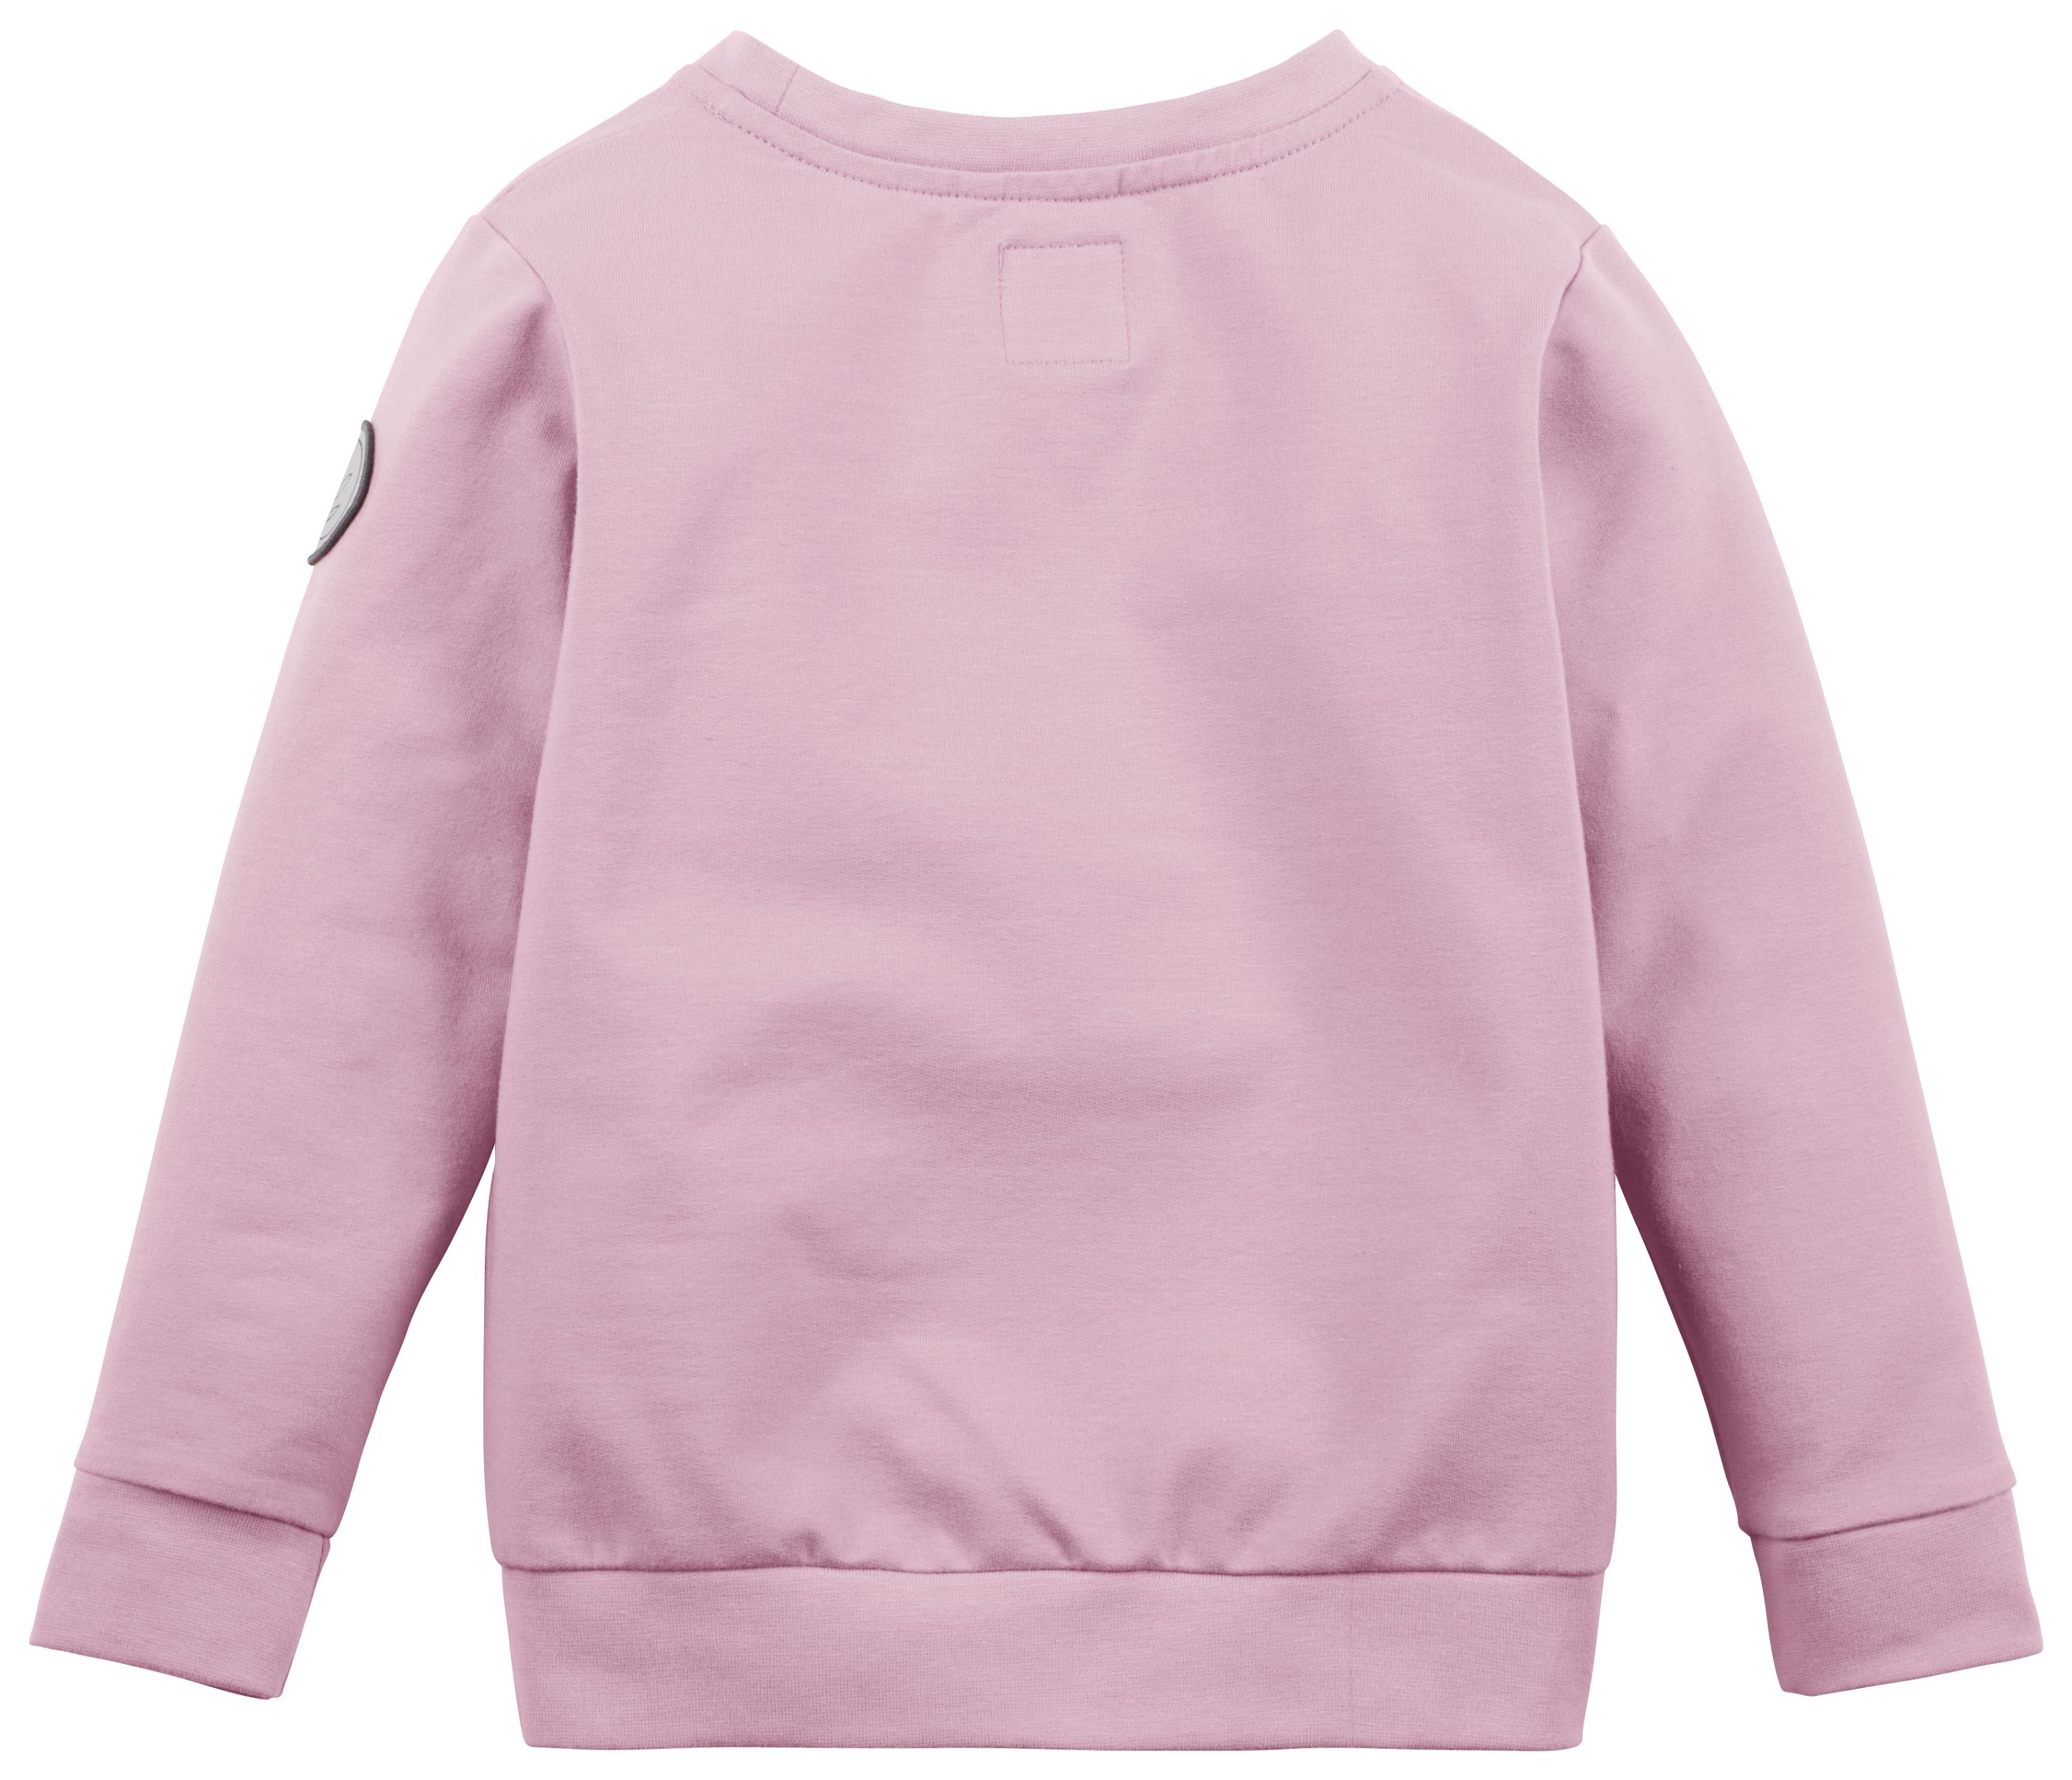 Die Rückseite des rosa FancyFriday-Sweatshirts